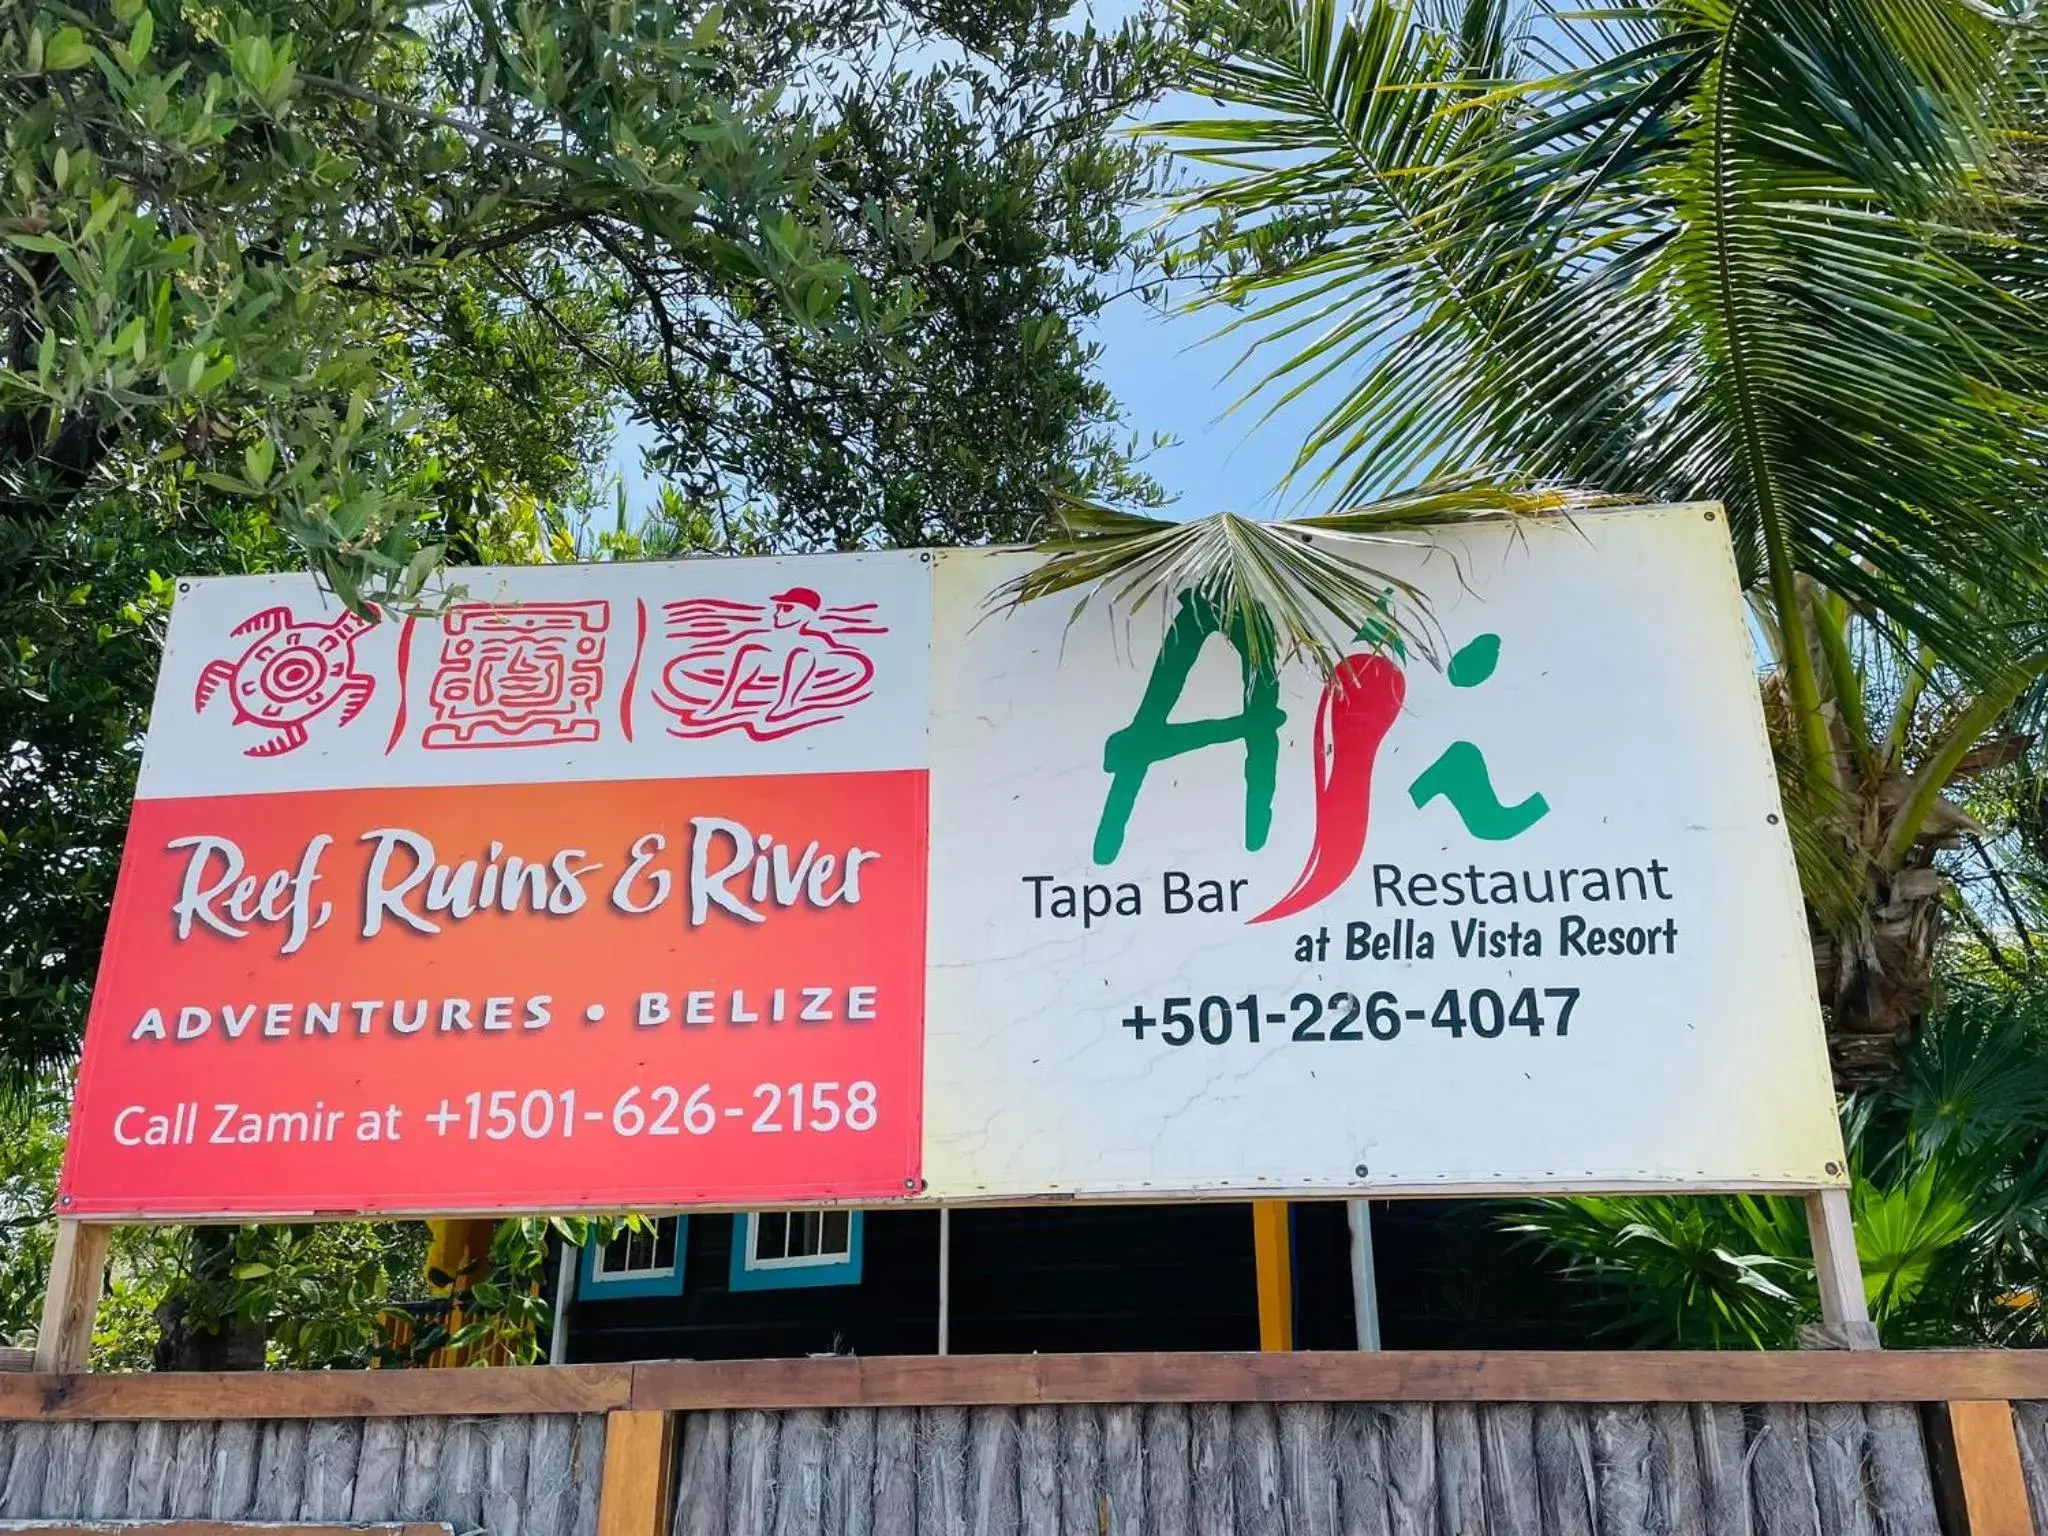 Property logo or sign in Bella Vista Resort Belize